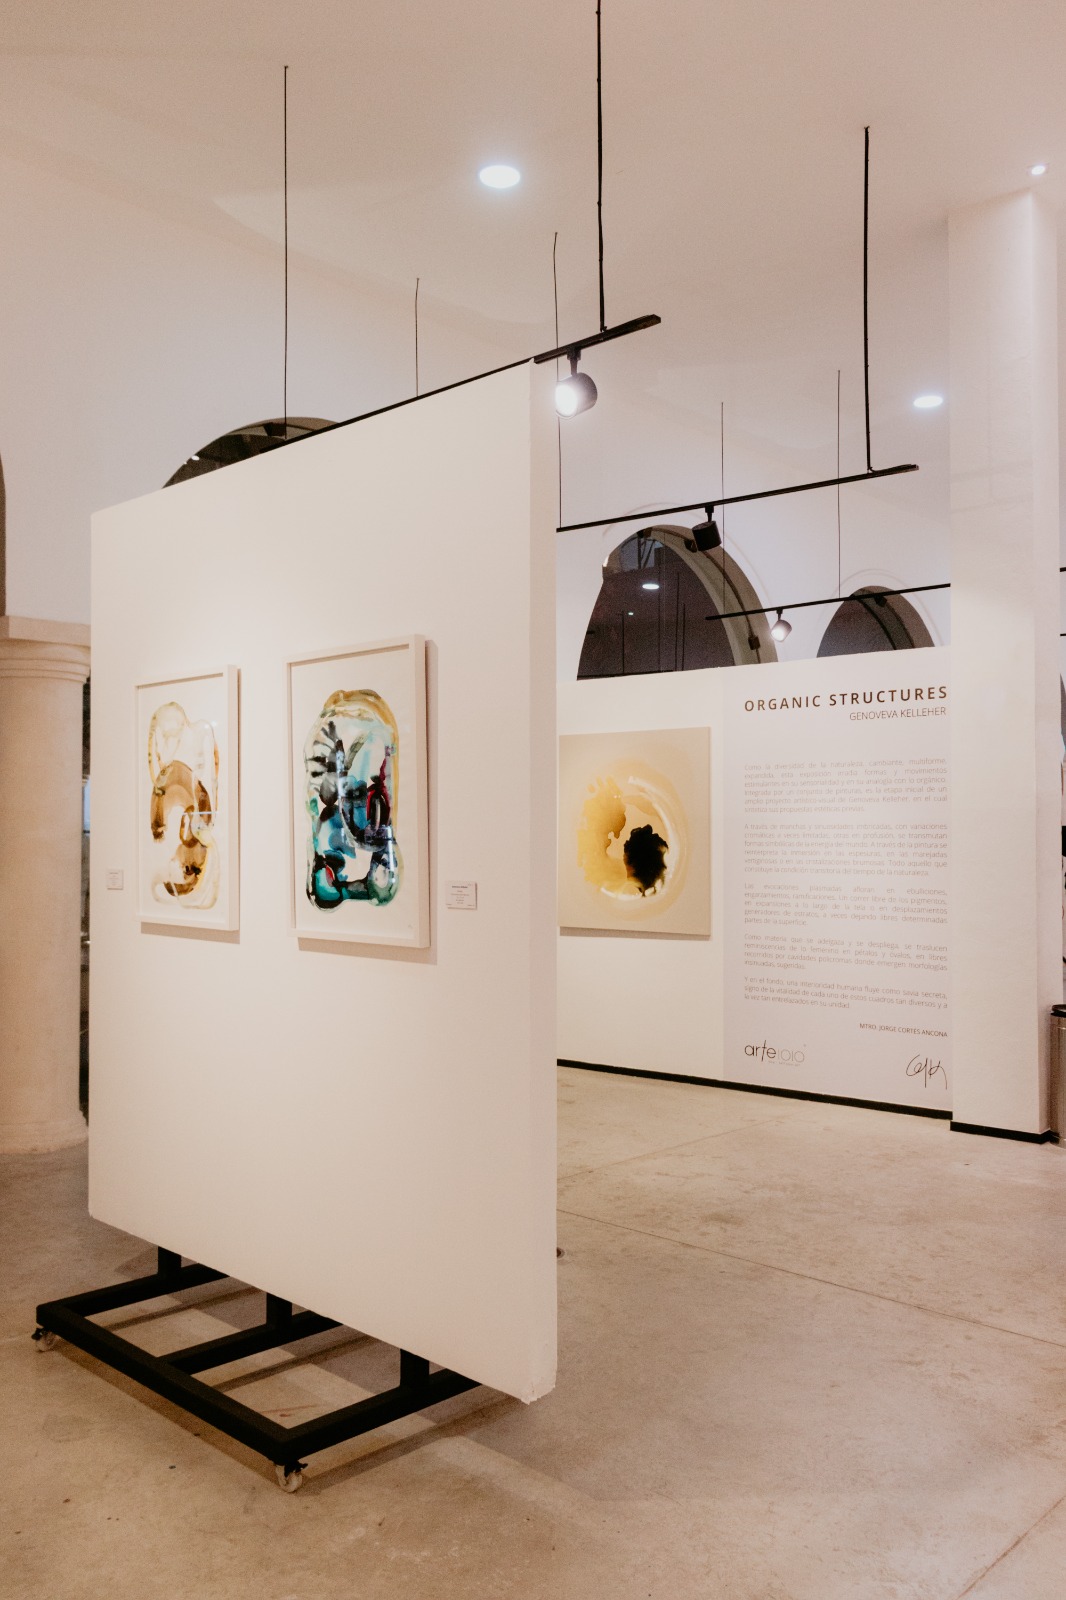 Arte 10/10 inaugura la exposición “Organic Structures” de Genoveva Kelleher, arte en merida, galerías en merida